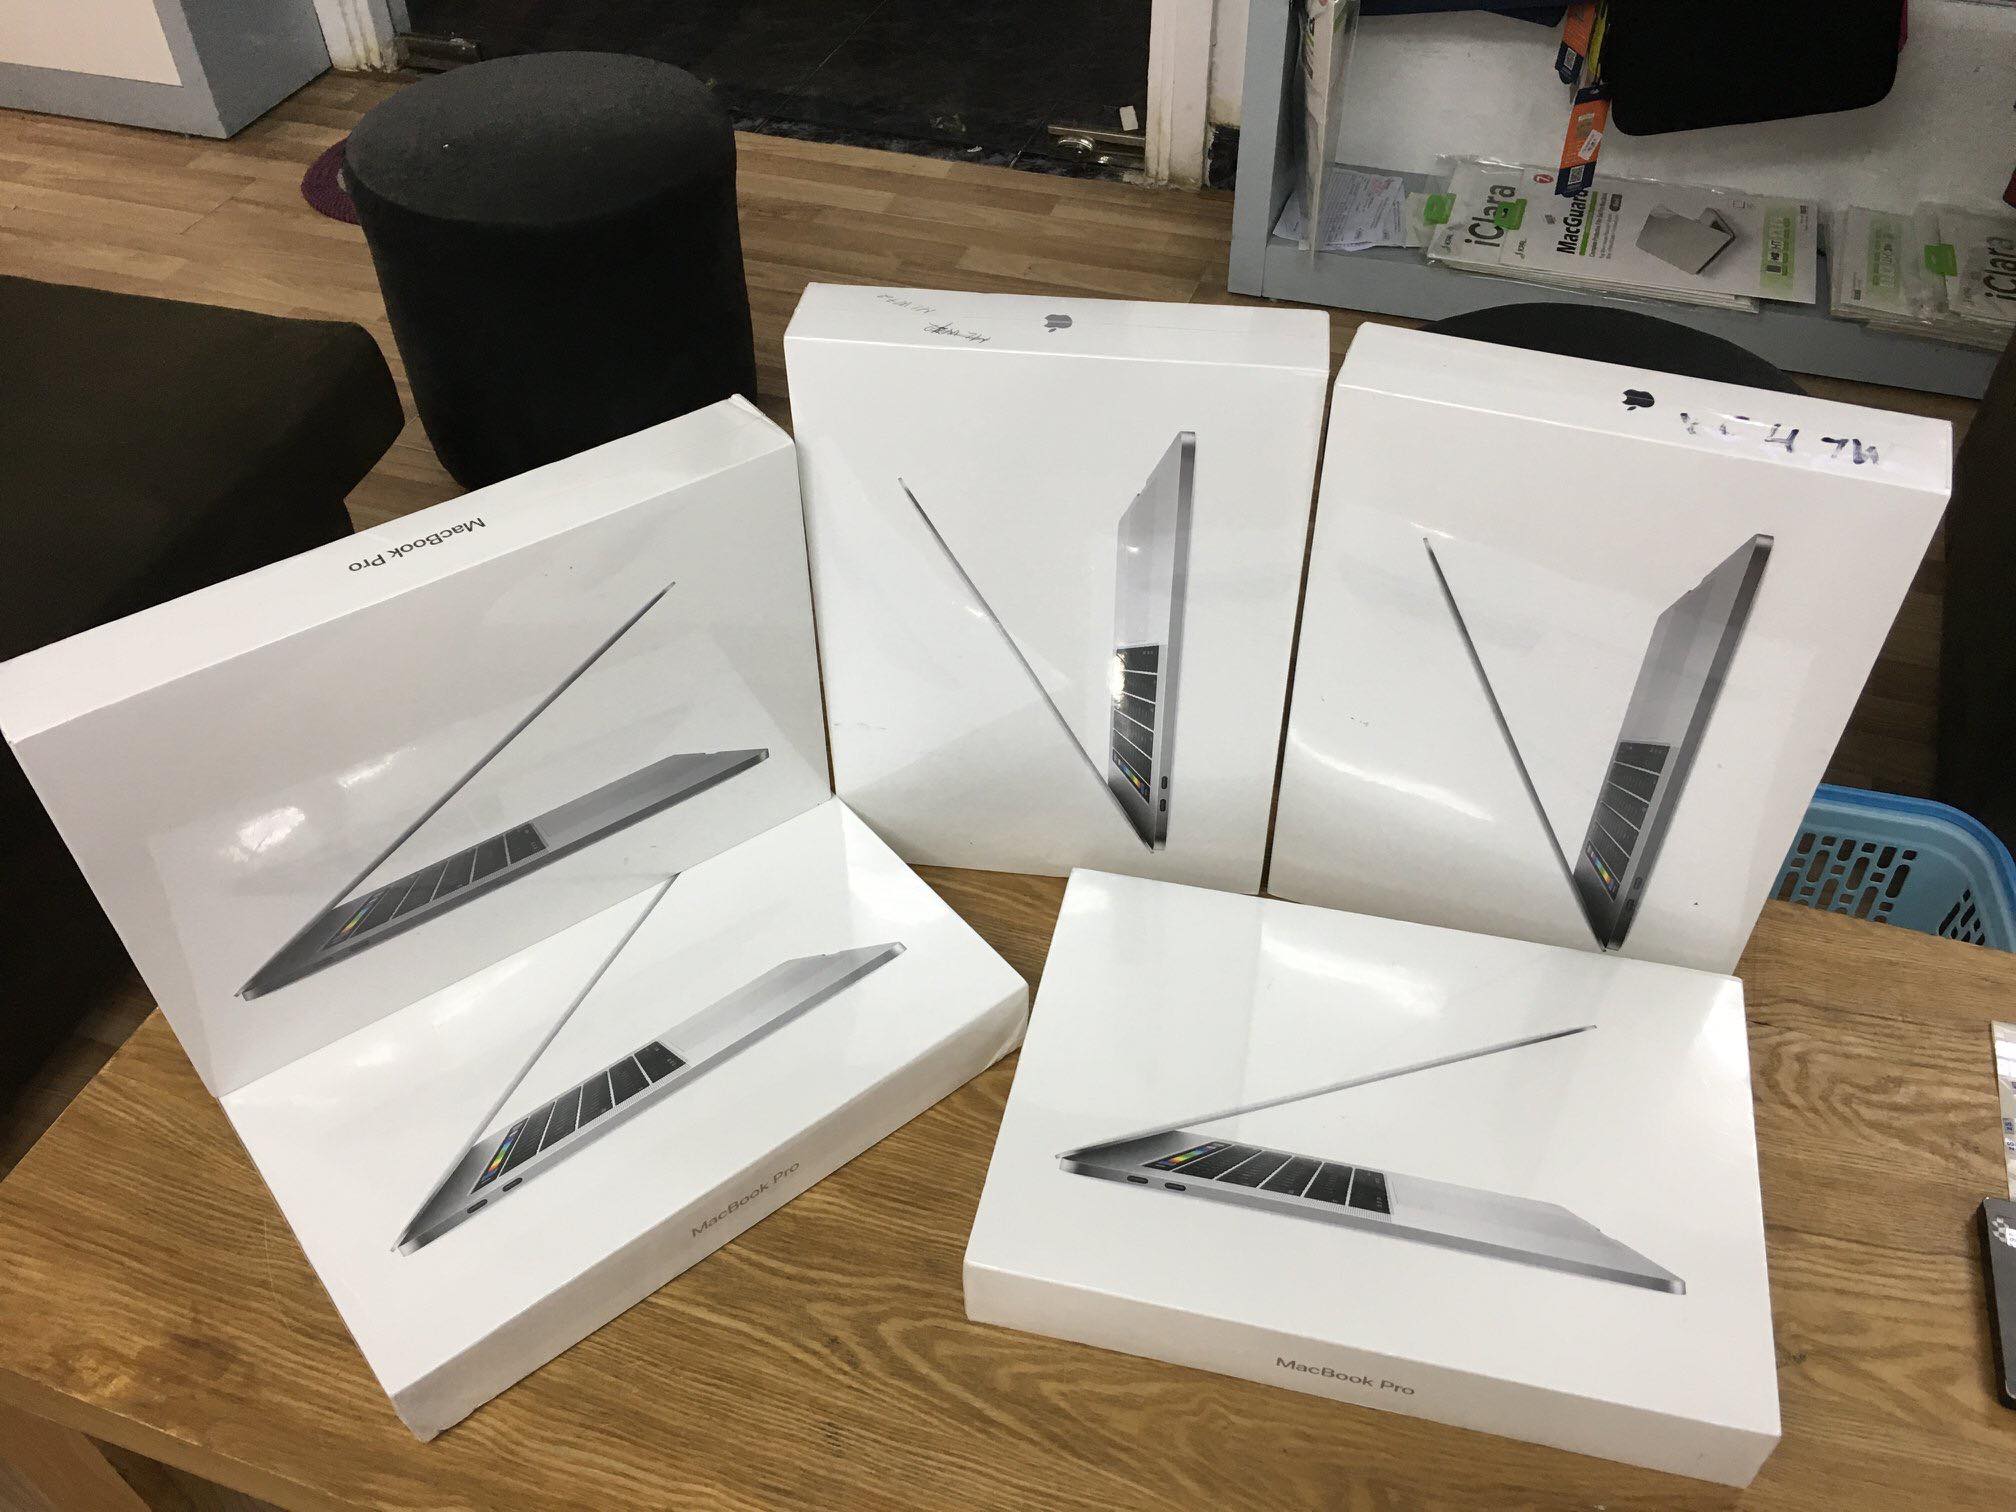  Macbook Pro 13 inch 2019